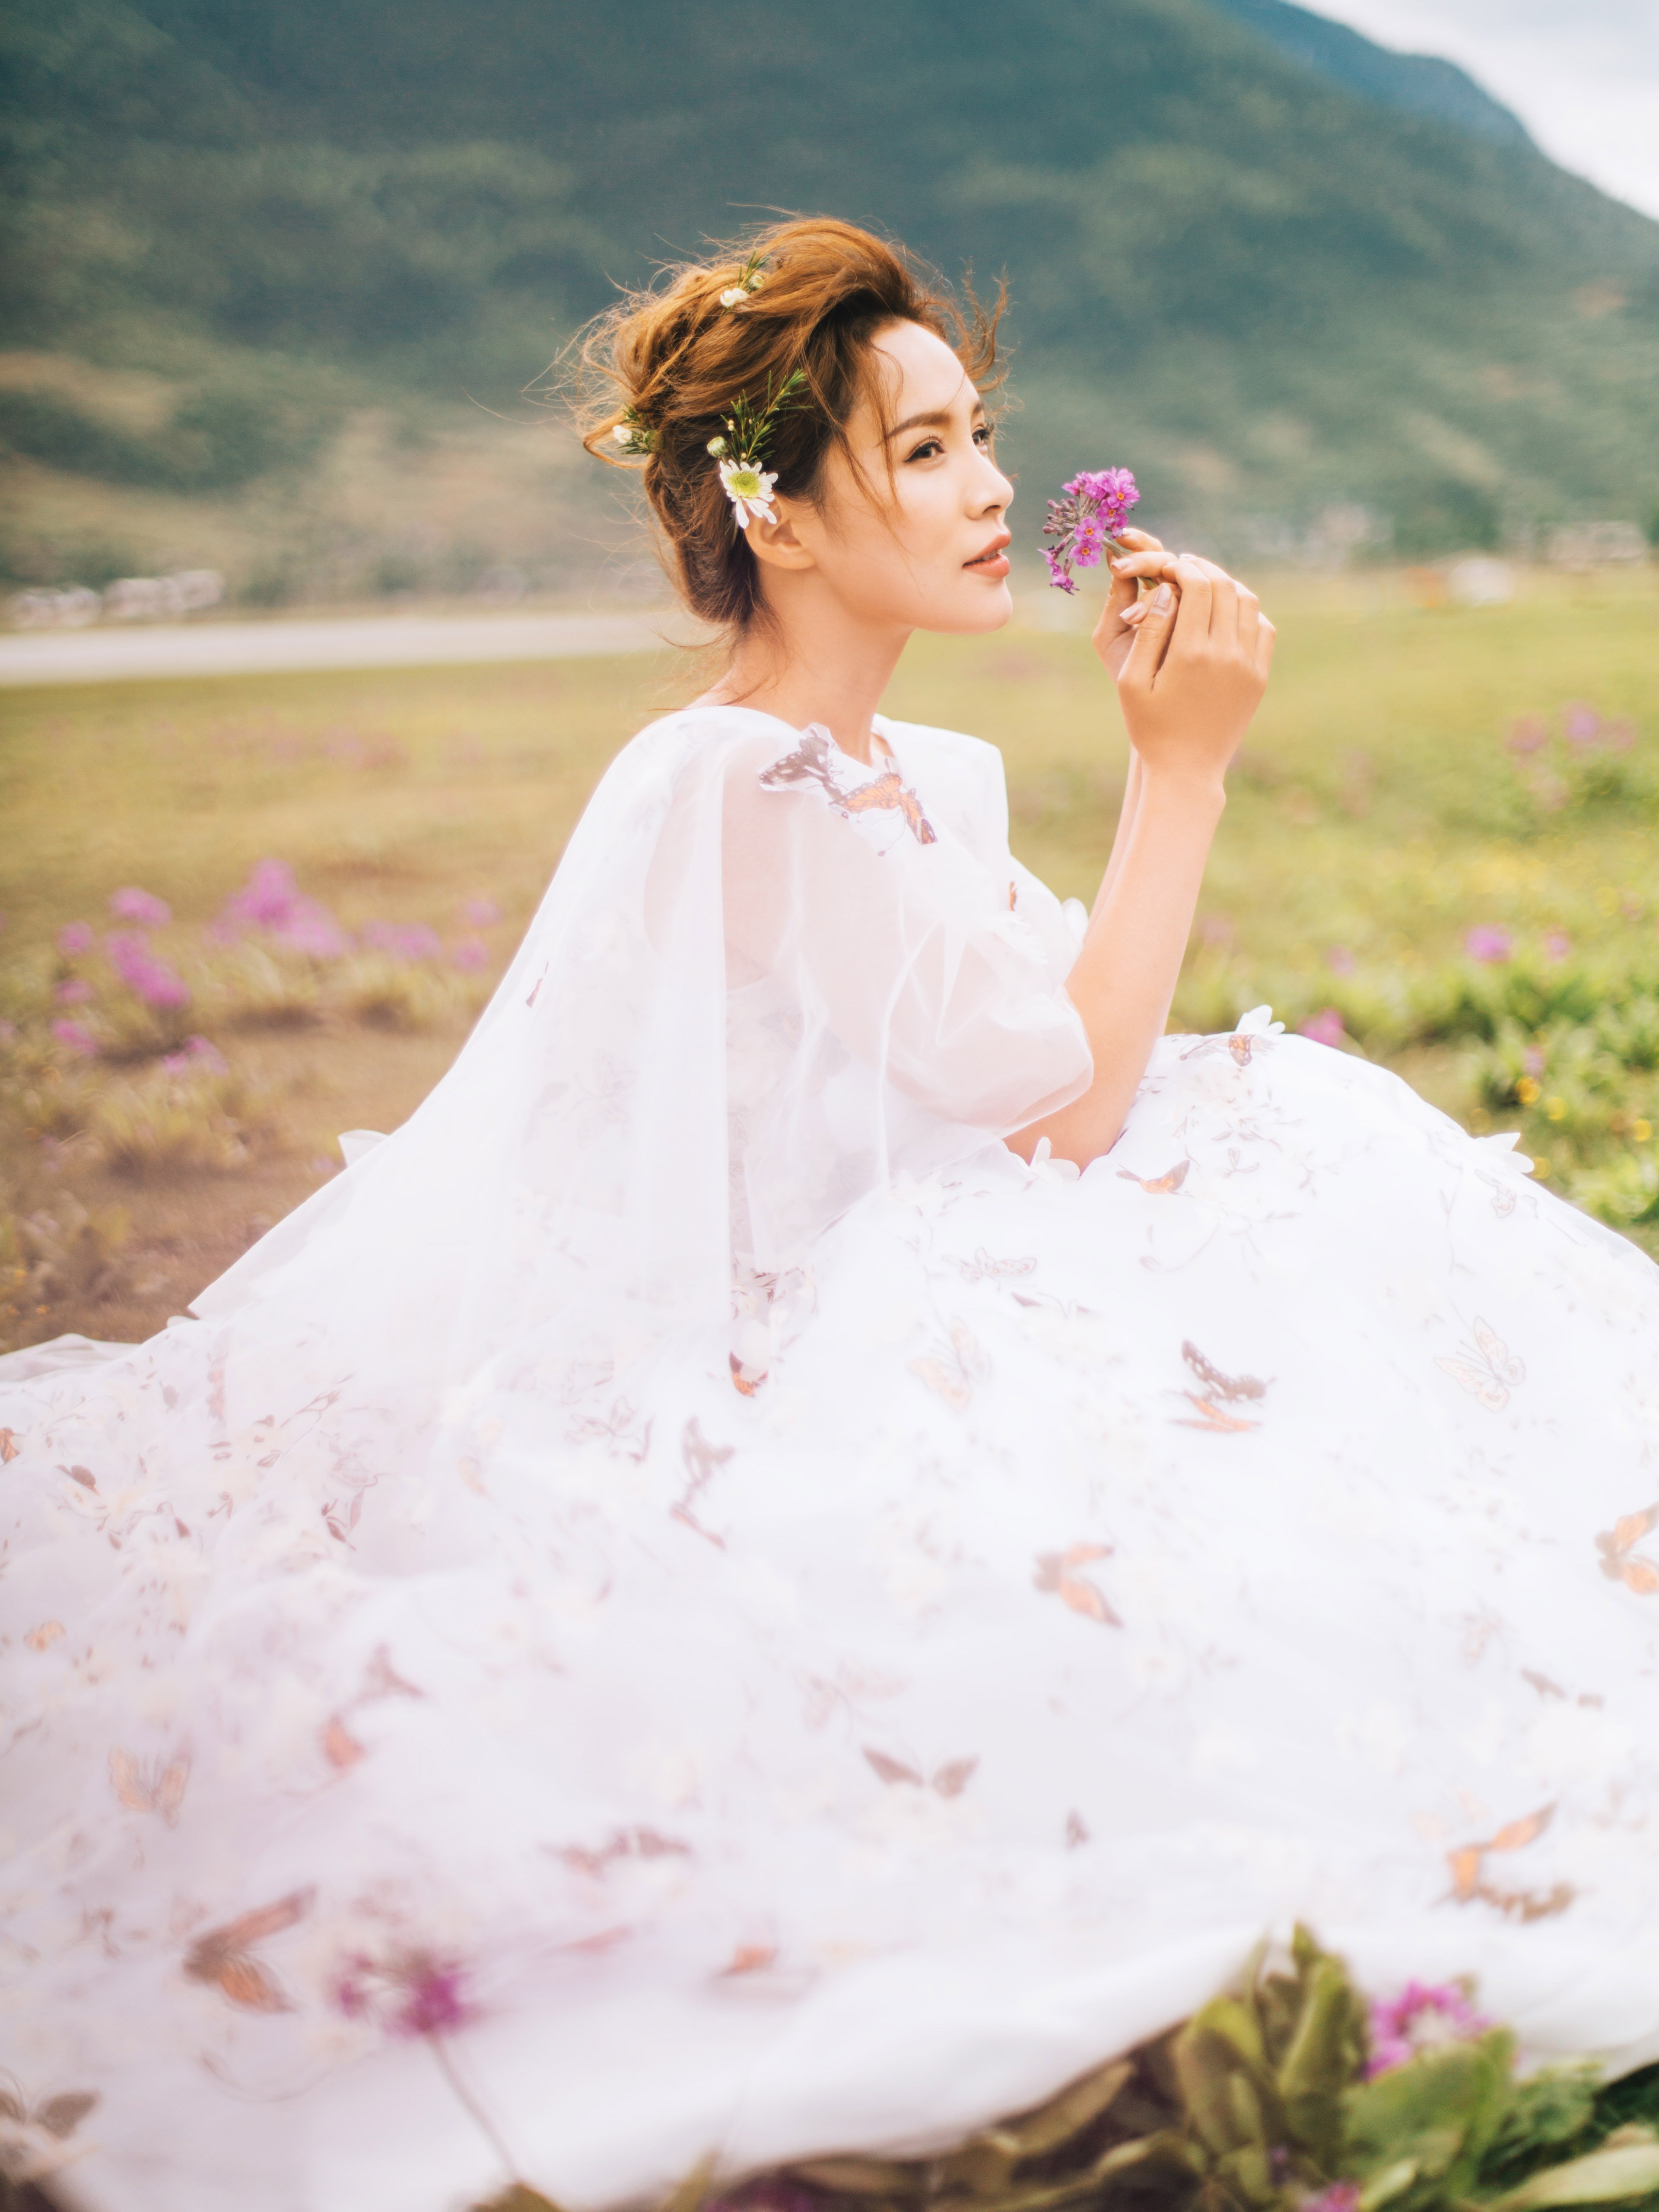 【東頌視覺全球旅拍--麗江站】小清新婚紗照